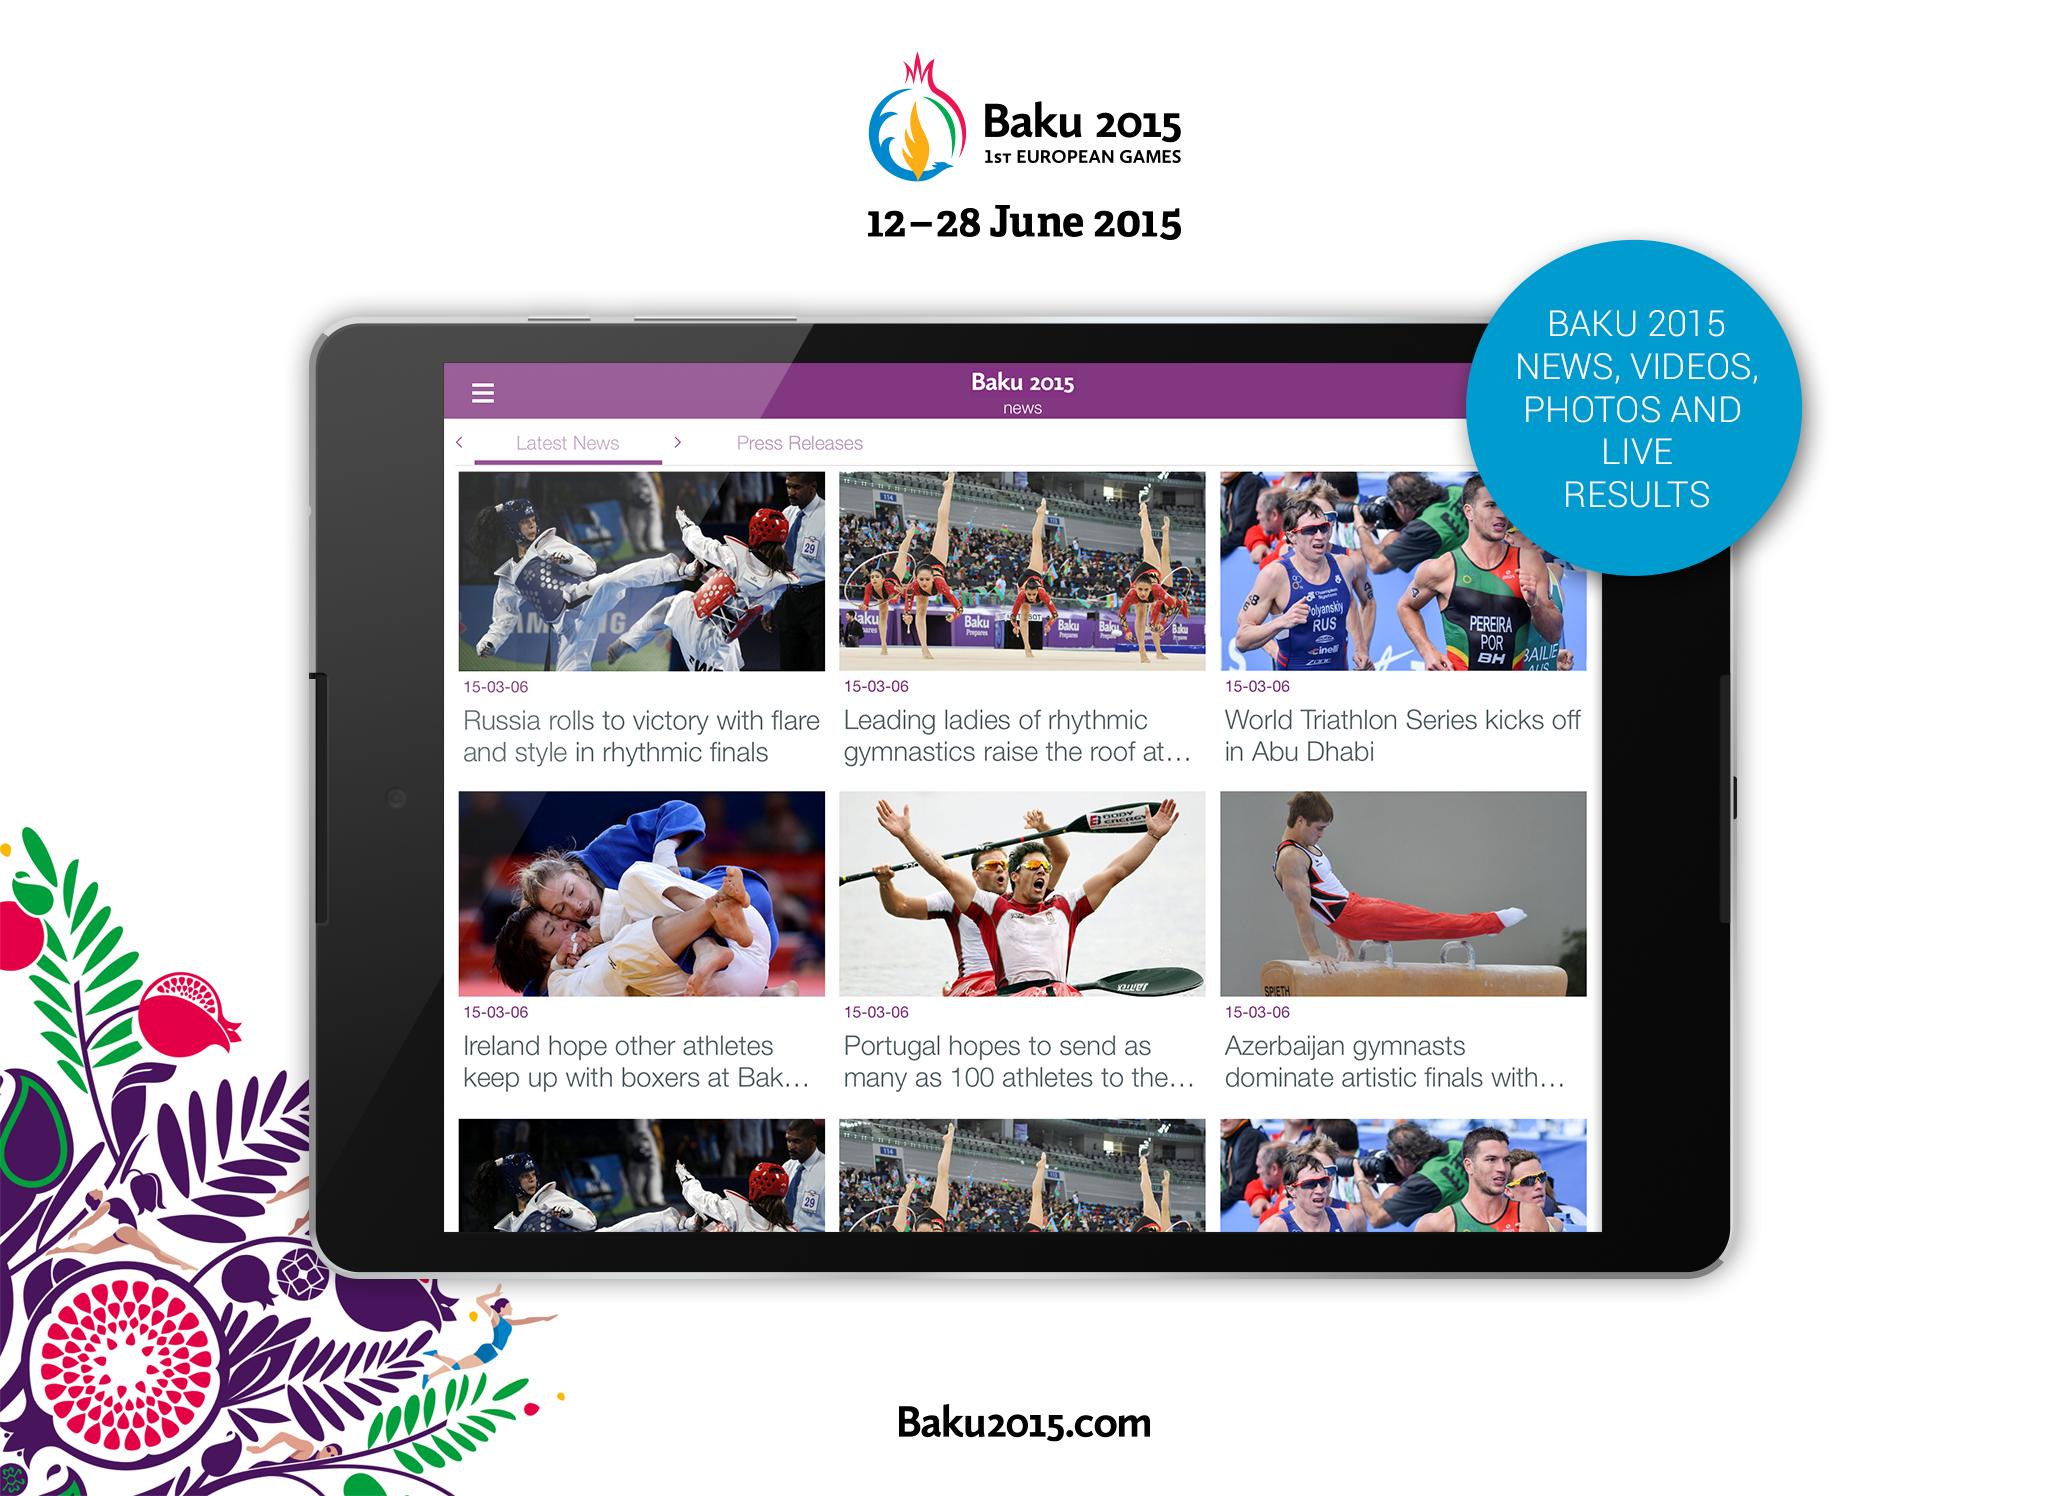 Приложение 2015. SW 2015 app. Baku European games Key Visual. Arxitect_Baku_Official Инстаграмм.